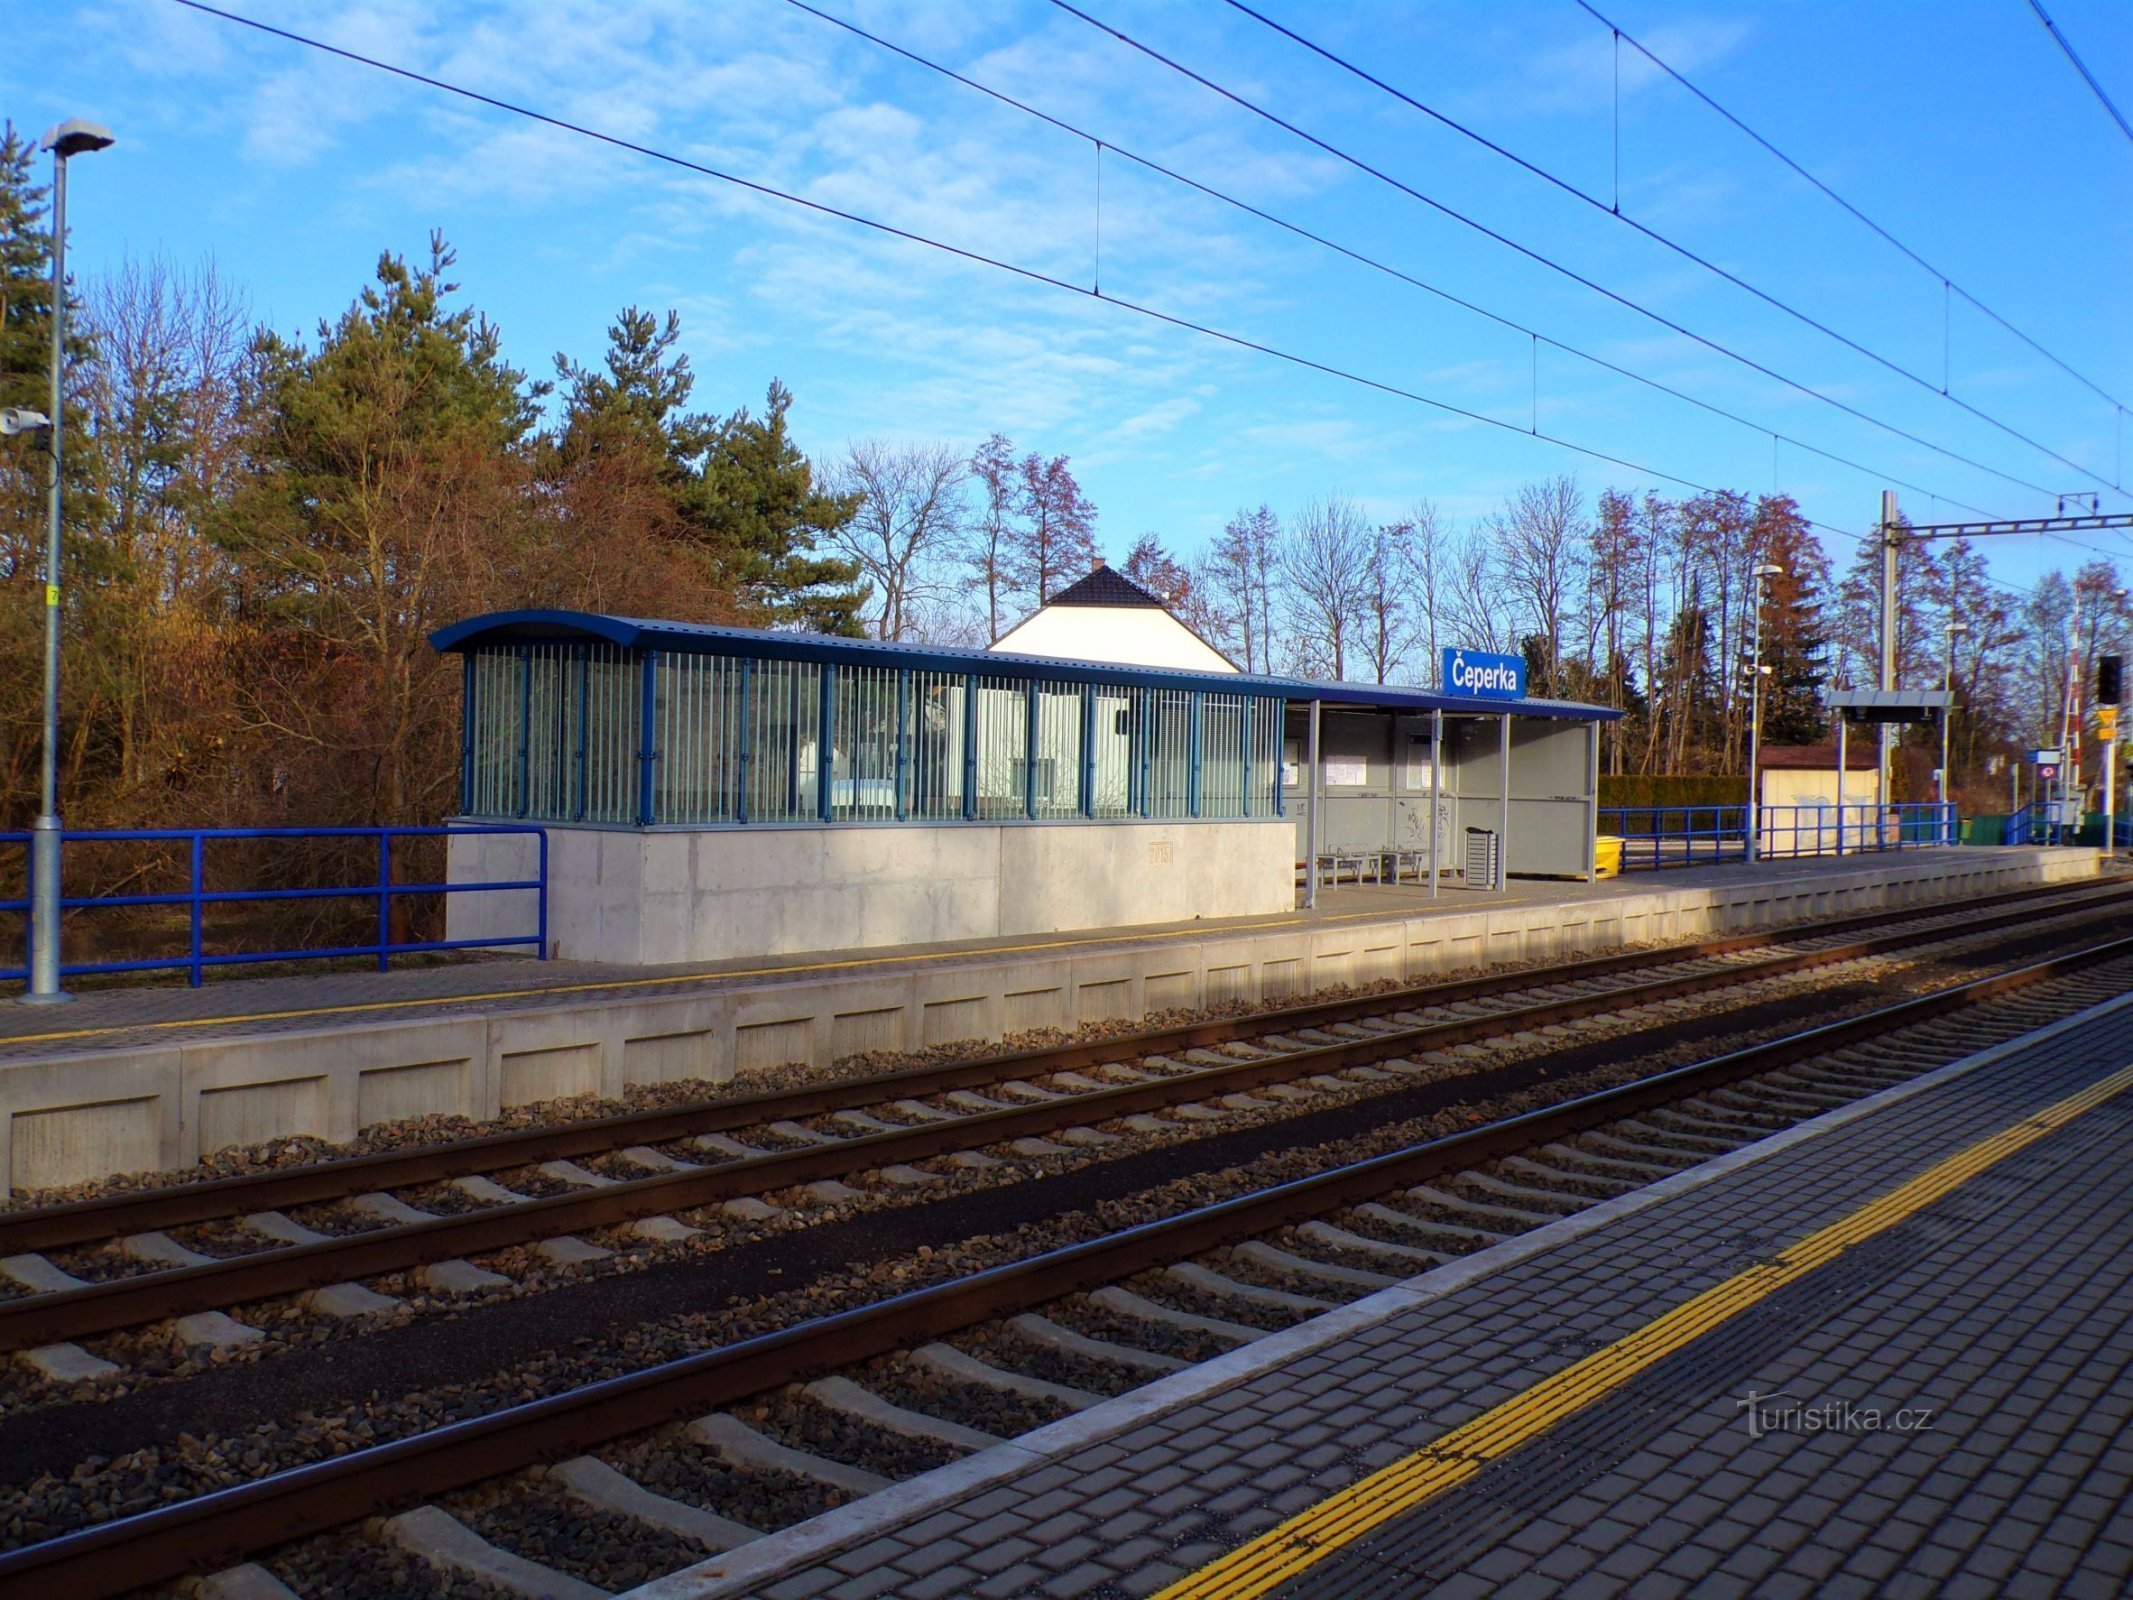 Σιδηροδρομικός Σταθμός (Čeperka, 18.2.2022/XNUMX/XNUMX)